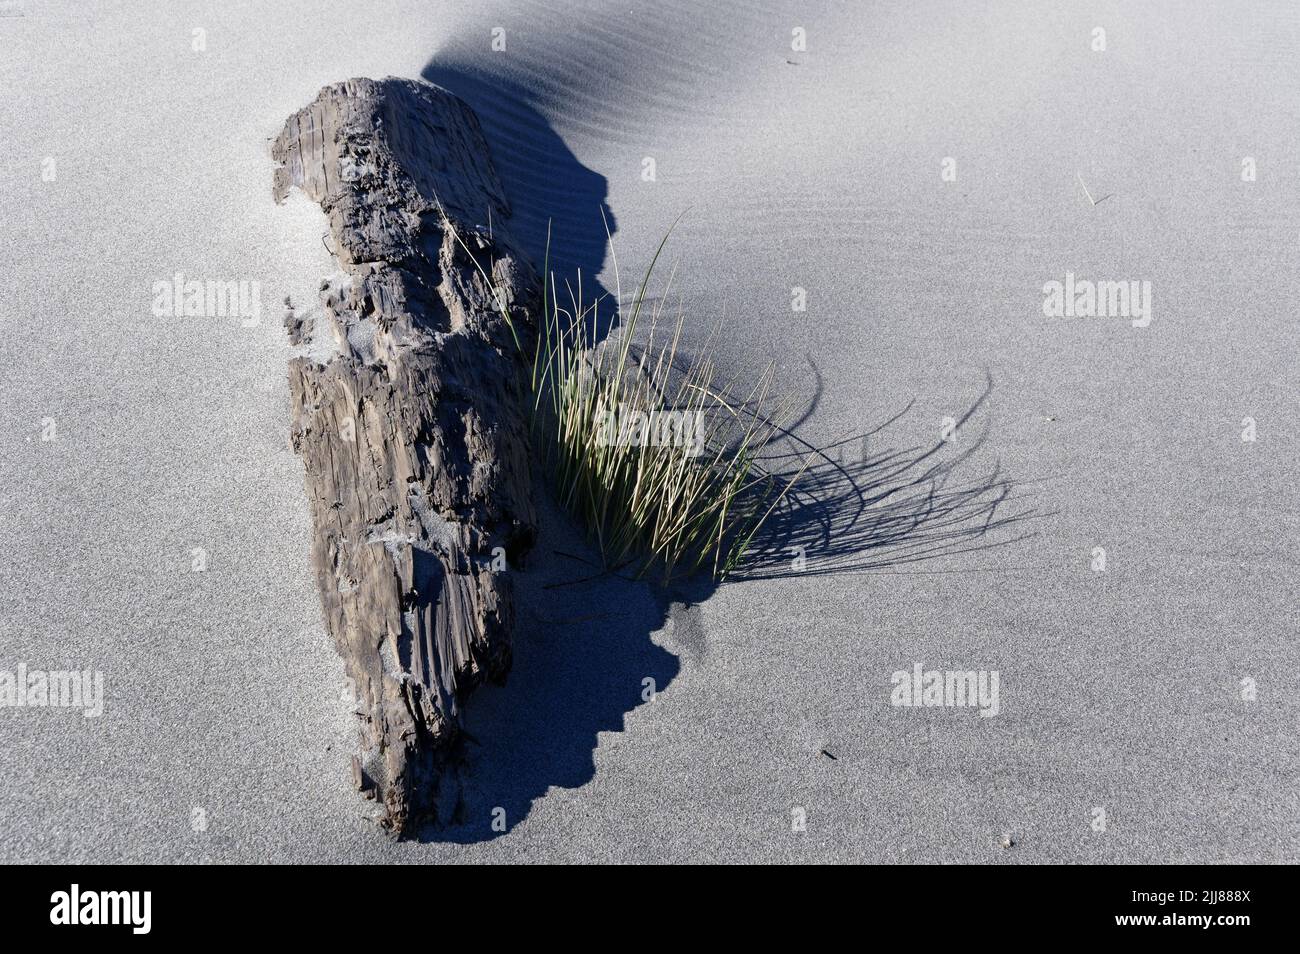 Der Stoßsack wächst entlang des verwitterten Baumstammes, der teilweise vom Wind geblasenen Sand am Strand begraben ist. Stockfoto